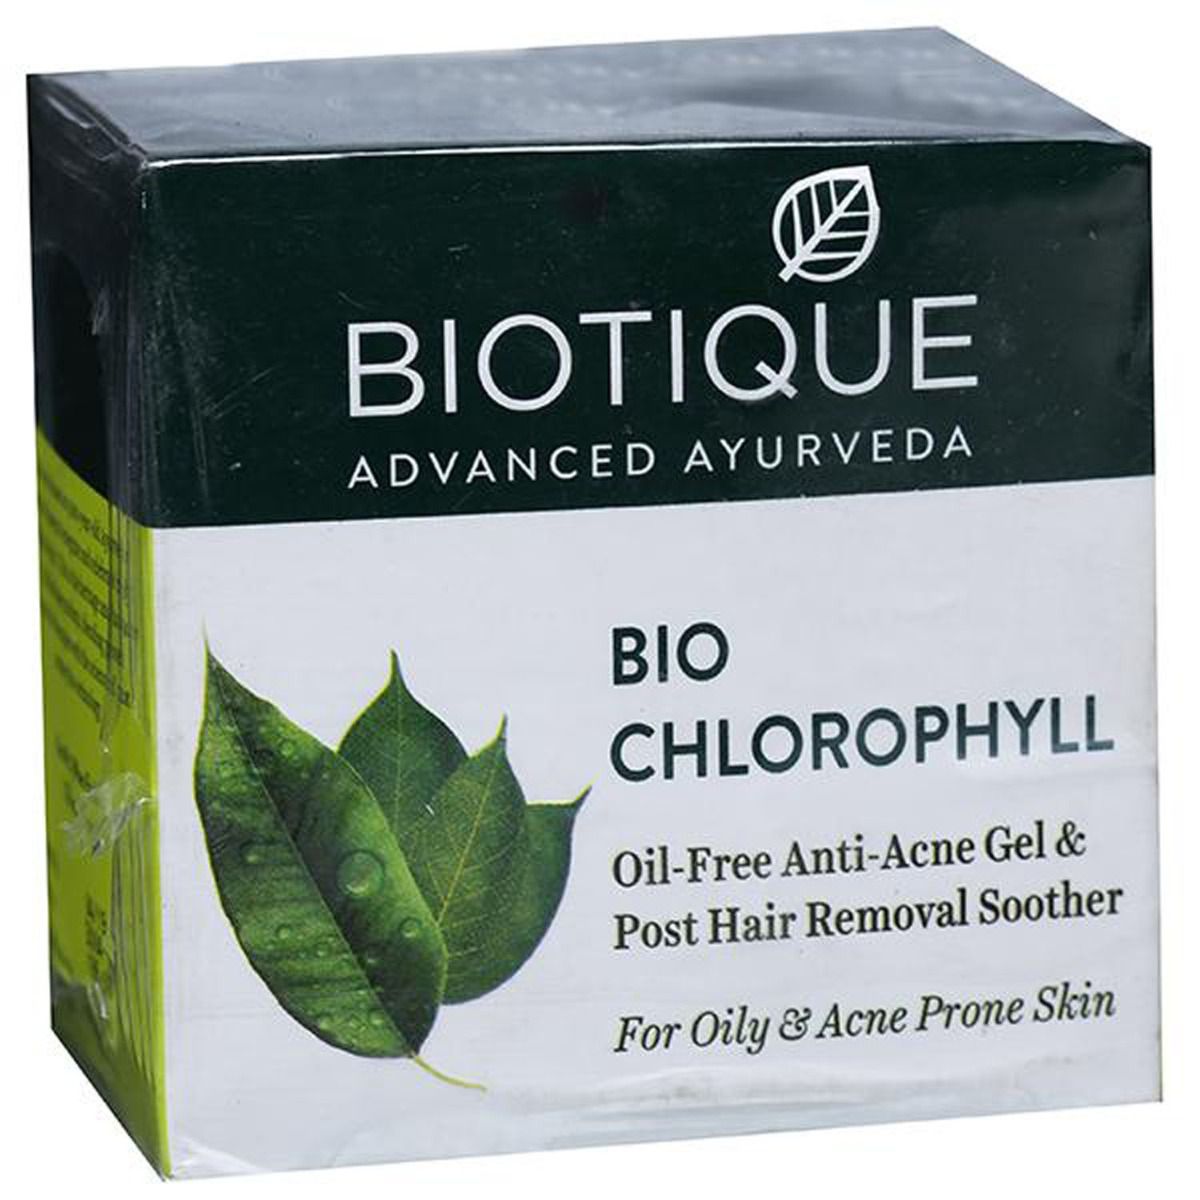 Biotique Bio Chlorophyll Oil Free Anti-Acne Gel, 50 gm, Pack of 1 